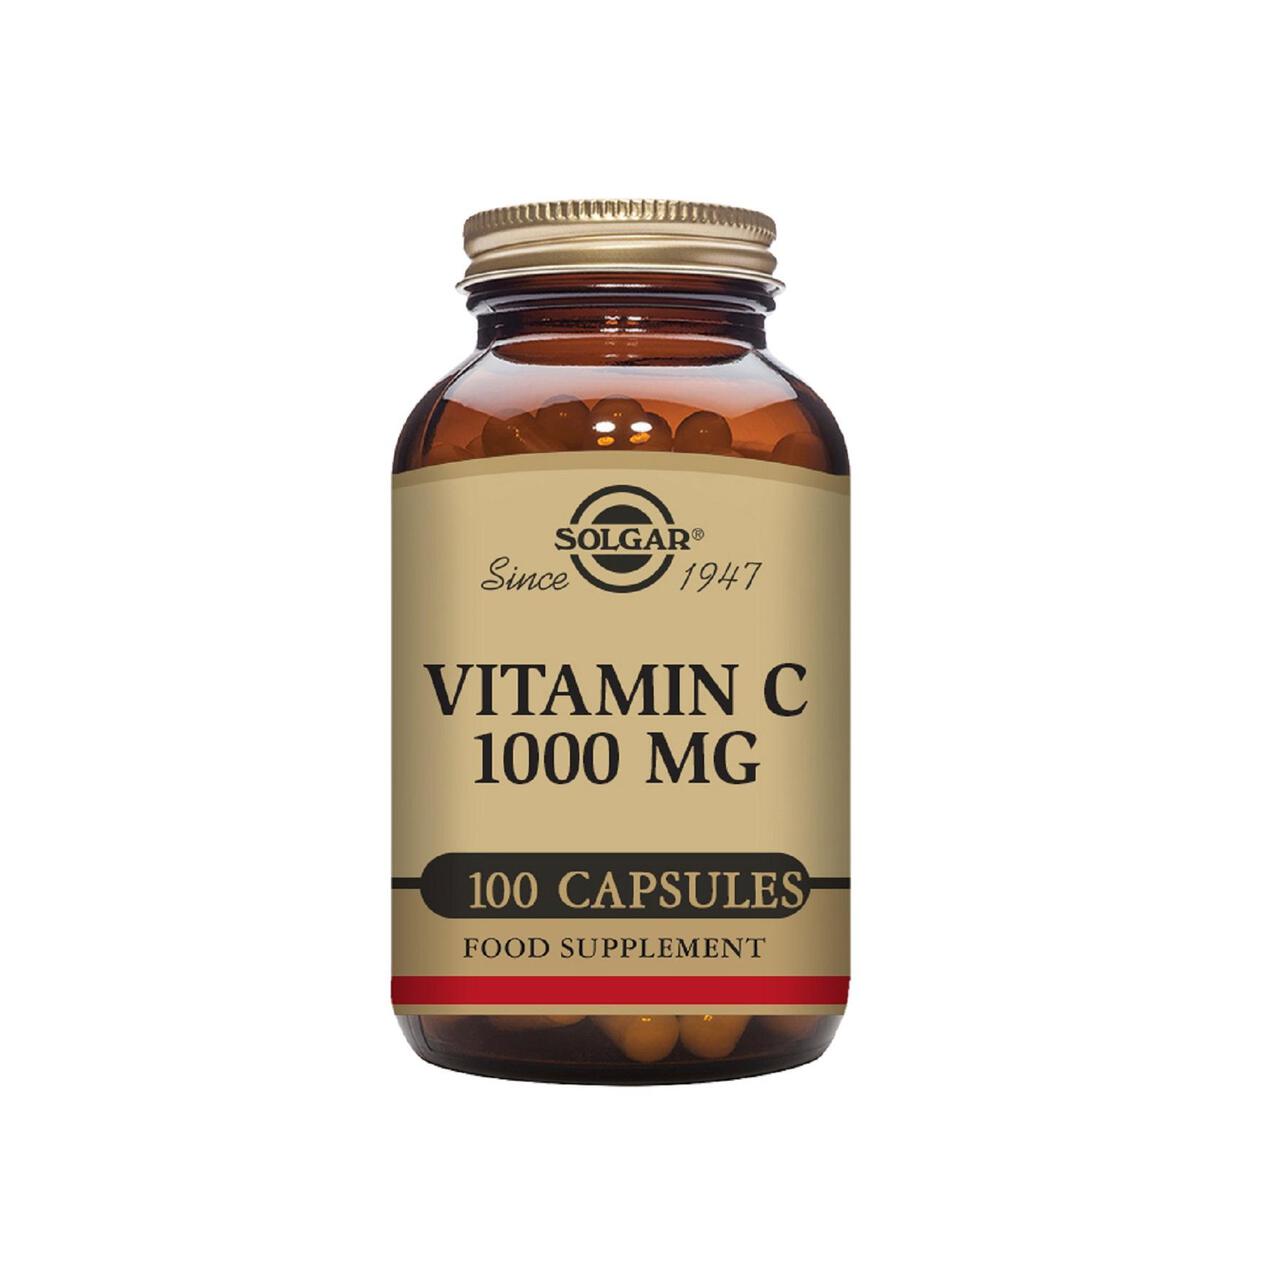 Solgar Vitamin C Supplement Capsules 1000mg 100 per pack